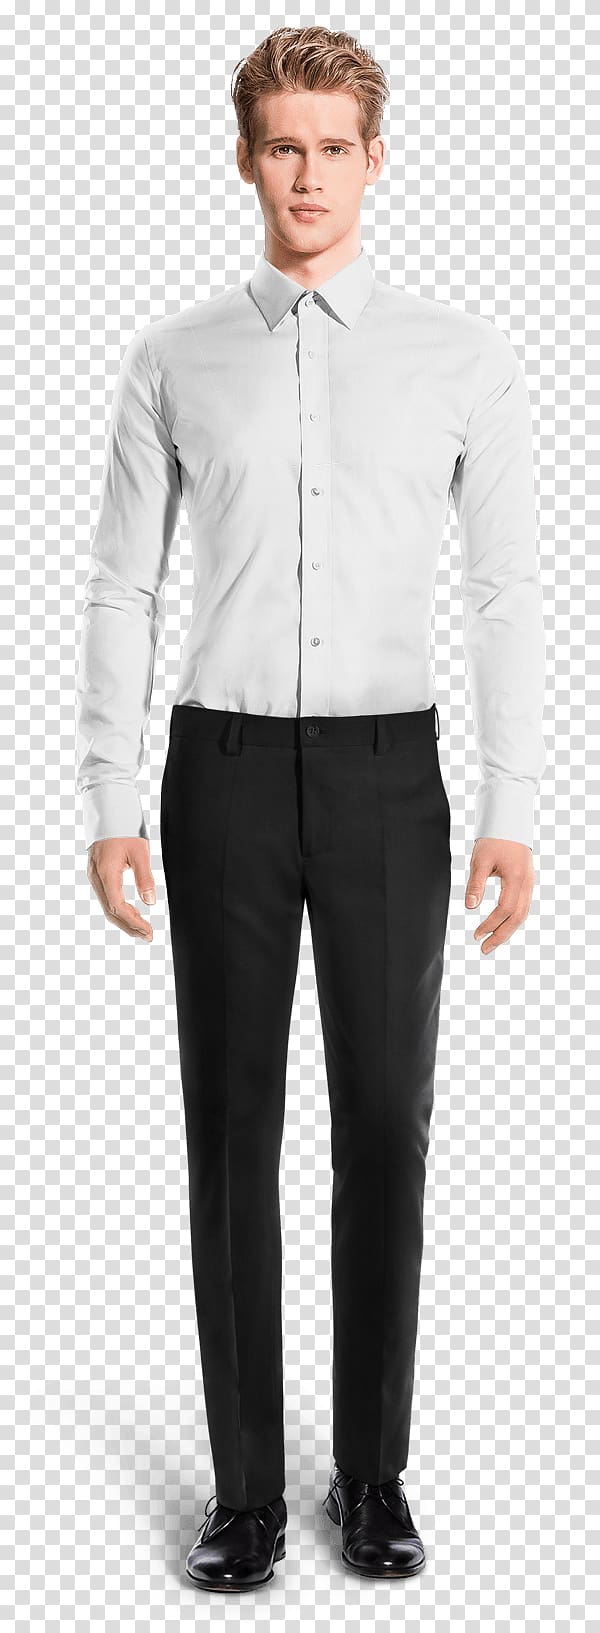 Suit Tuxedo Linen Velvet Cotton, Slim-fit Pants transparent background PNG clipart